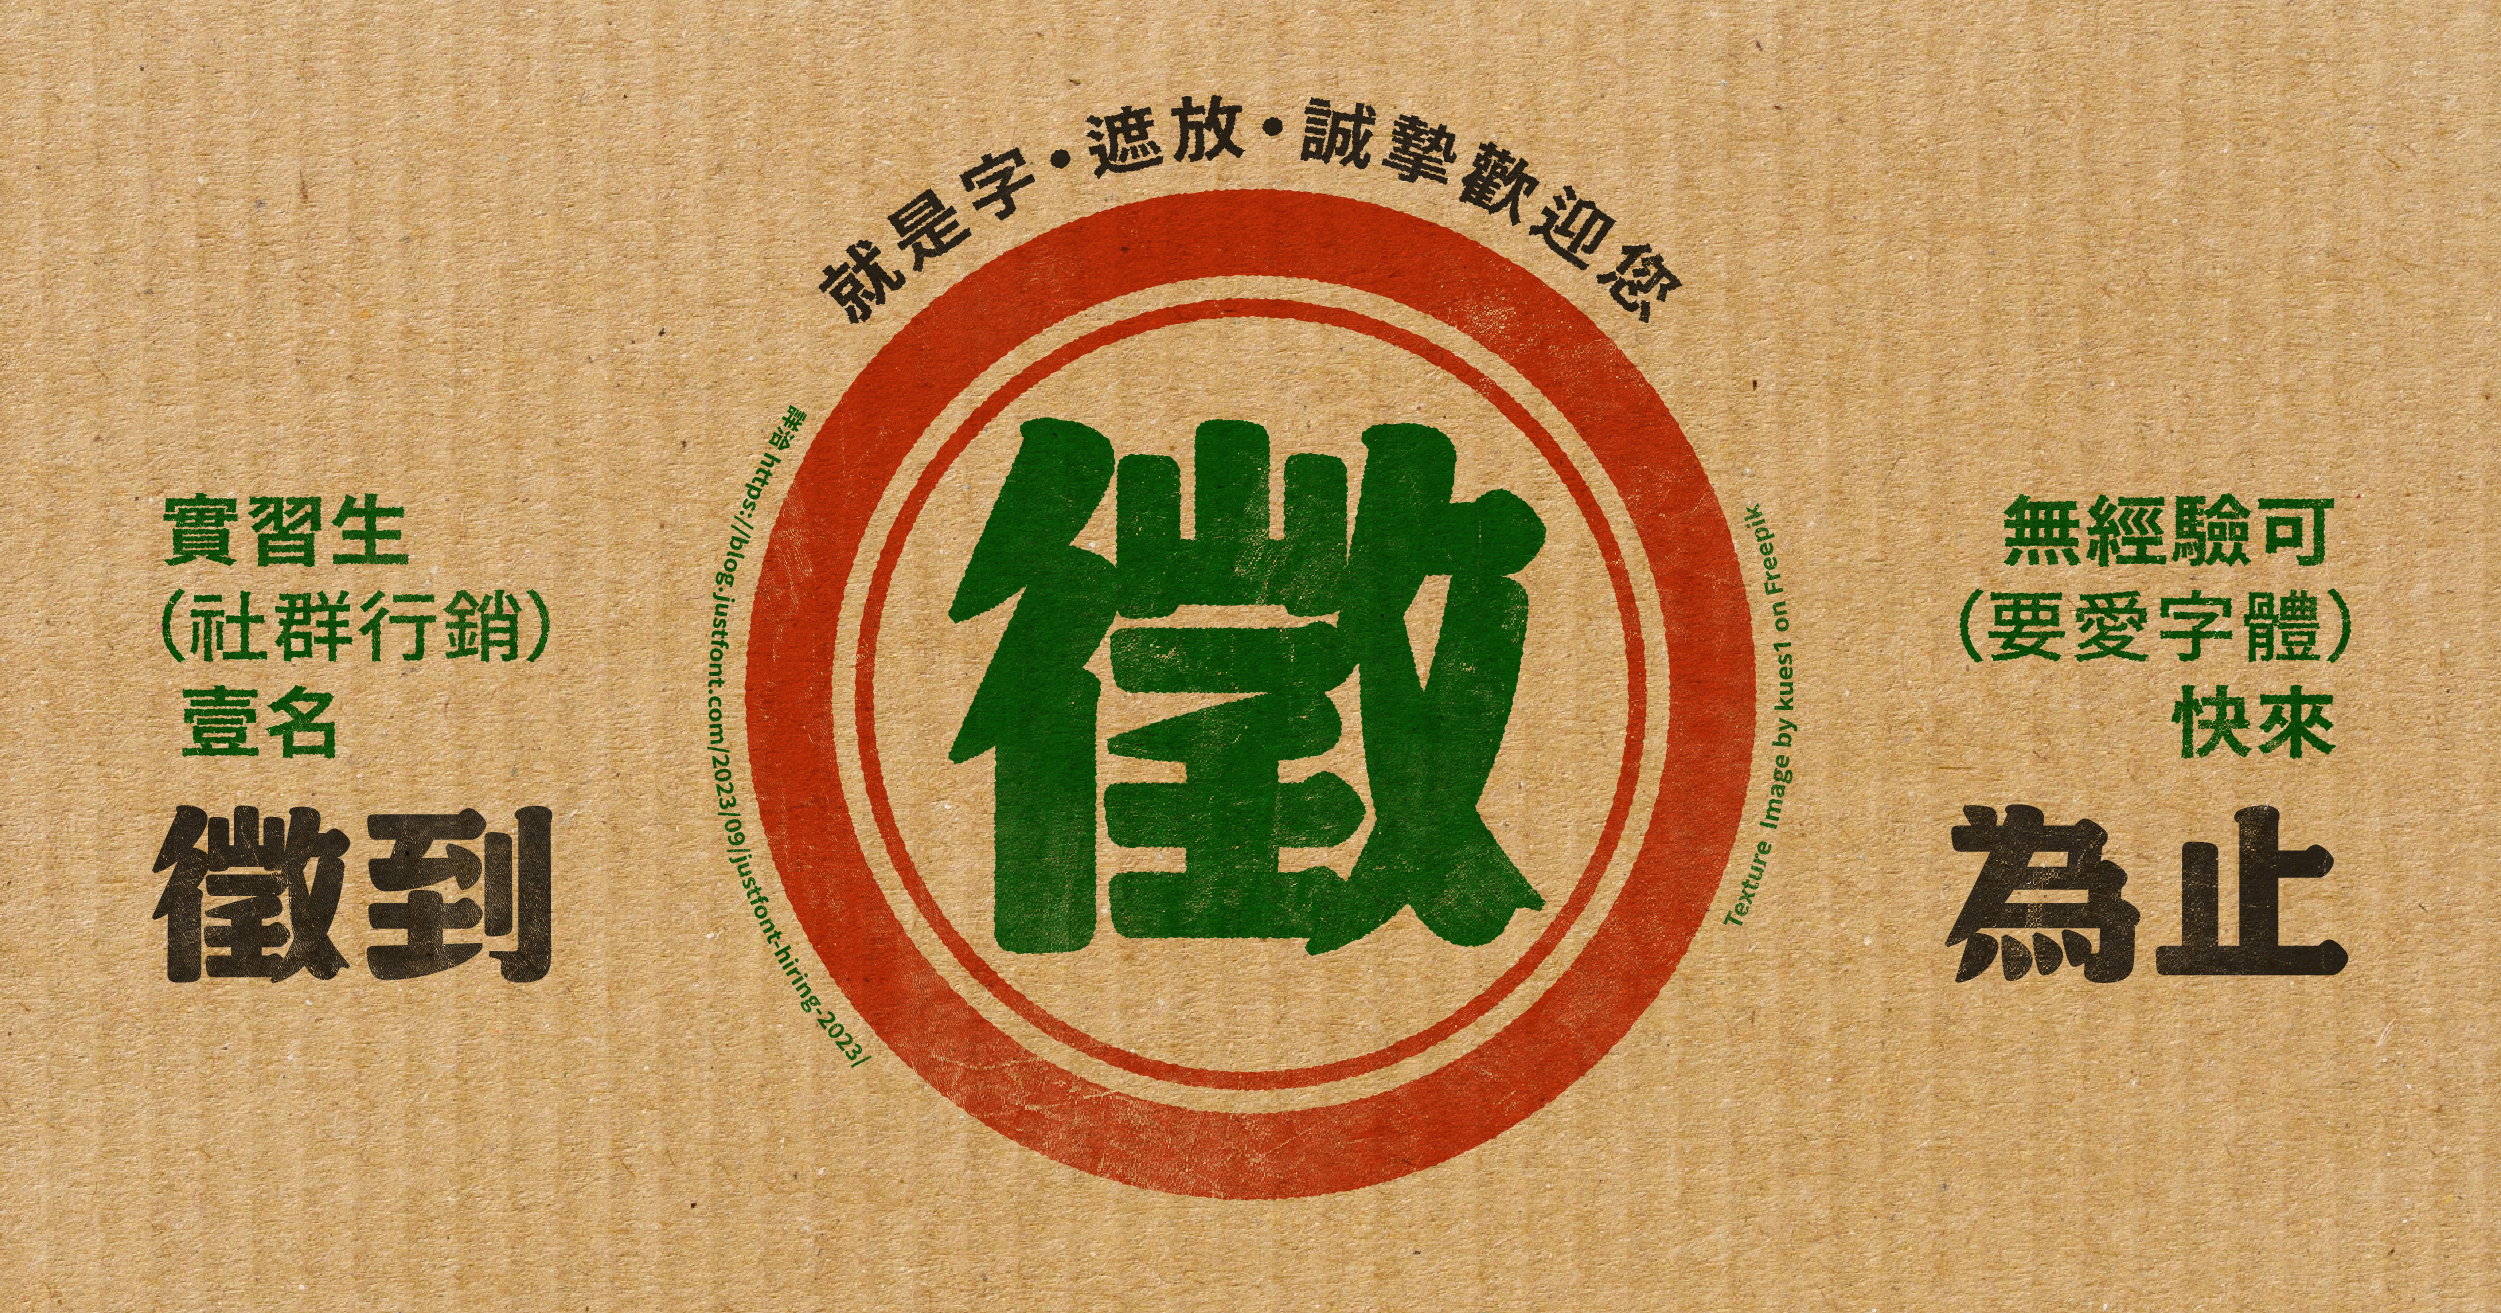 水果紙箱、漢字「徵」字樣、柑仔蜜